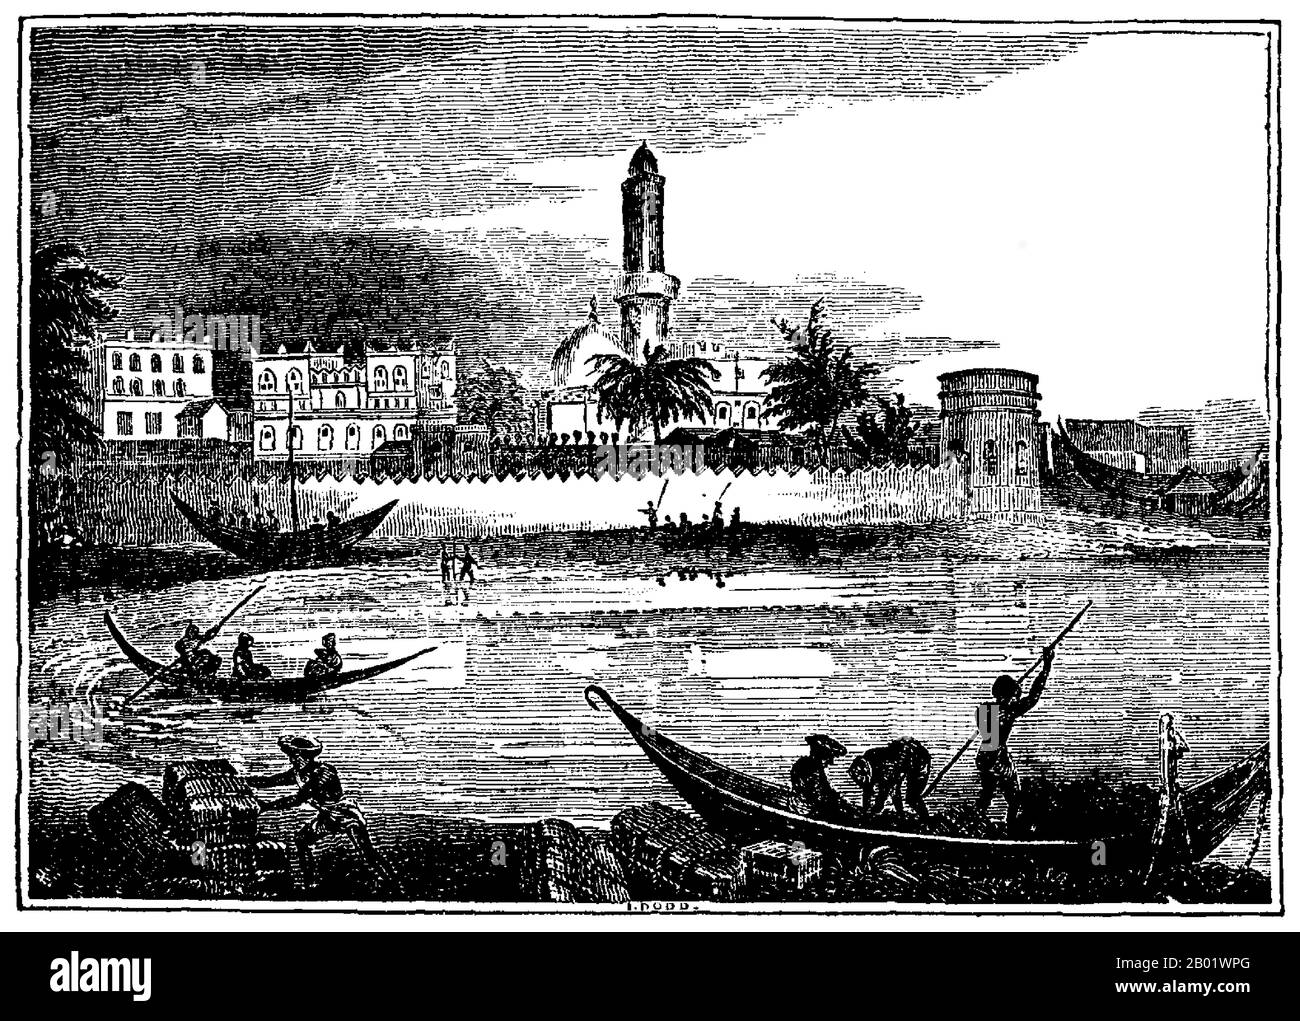 Yémen : un dessin du port de Mocha, Yémen, par I.. Dodd, pour The Mirror of Literature, Amusement and instruction (Londres), 1831. Moka ou Mokha est une ville portuaire sur la côte de la mer Rouge du Yémen. Jusqu'à ce qu'elle soit éclipsée au XIXe siècle par Aden et Hodeida, Mocha était le principal port de Sanaa, la capitale du Yémen Moka est célèbre pour être le principal marché du café du 15ème siècle jusqu'au 17ème siècle. Même après que d'autres sources de café aient été trouvées, les grains de moka (également appelés grains de Sanani ou mocha Sanani, signifiant de Sanaa) ont continué d'être appréciés pour leur saveur distinctive. Banque D'Images